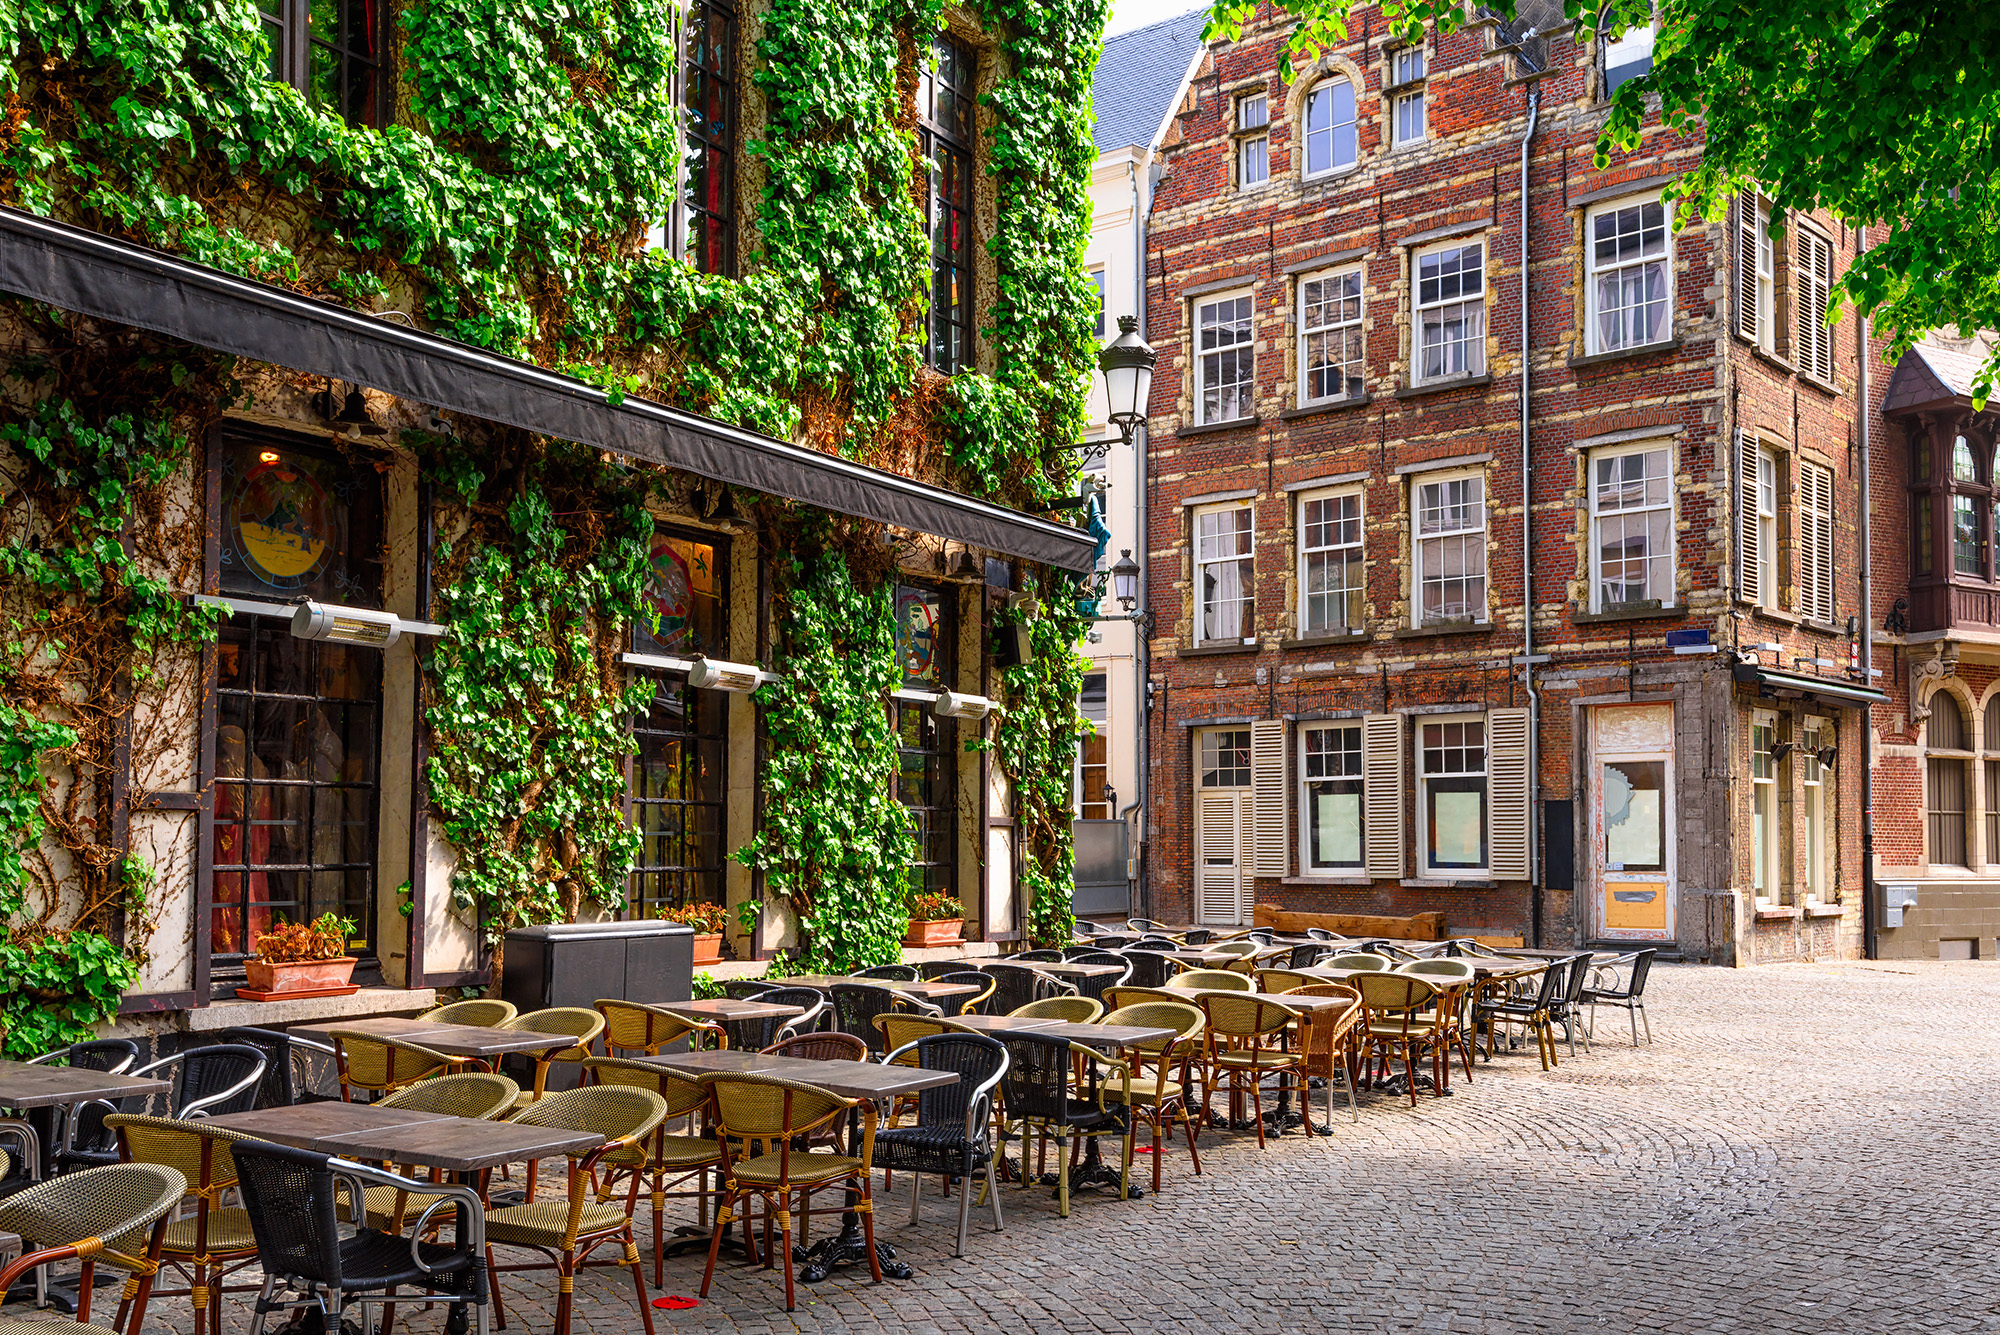  Café-restaurant Anvers